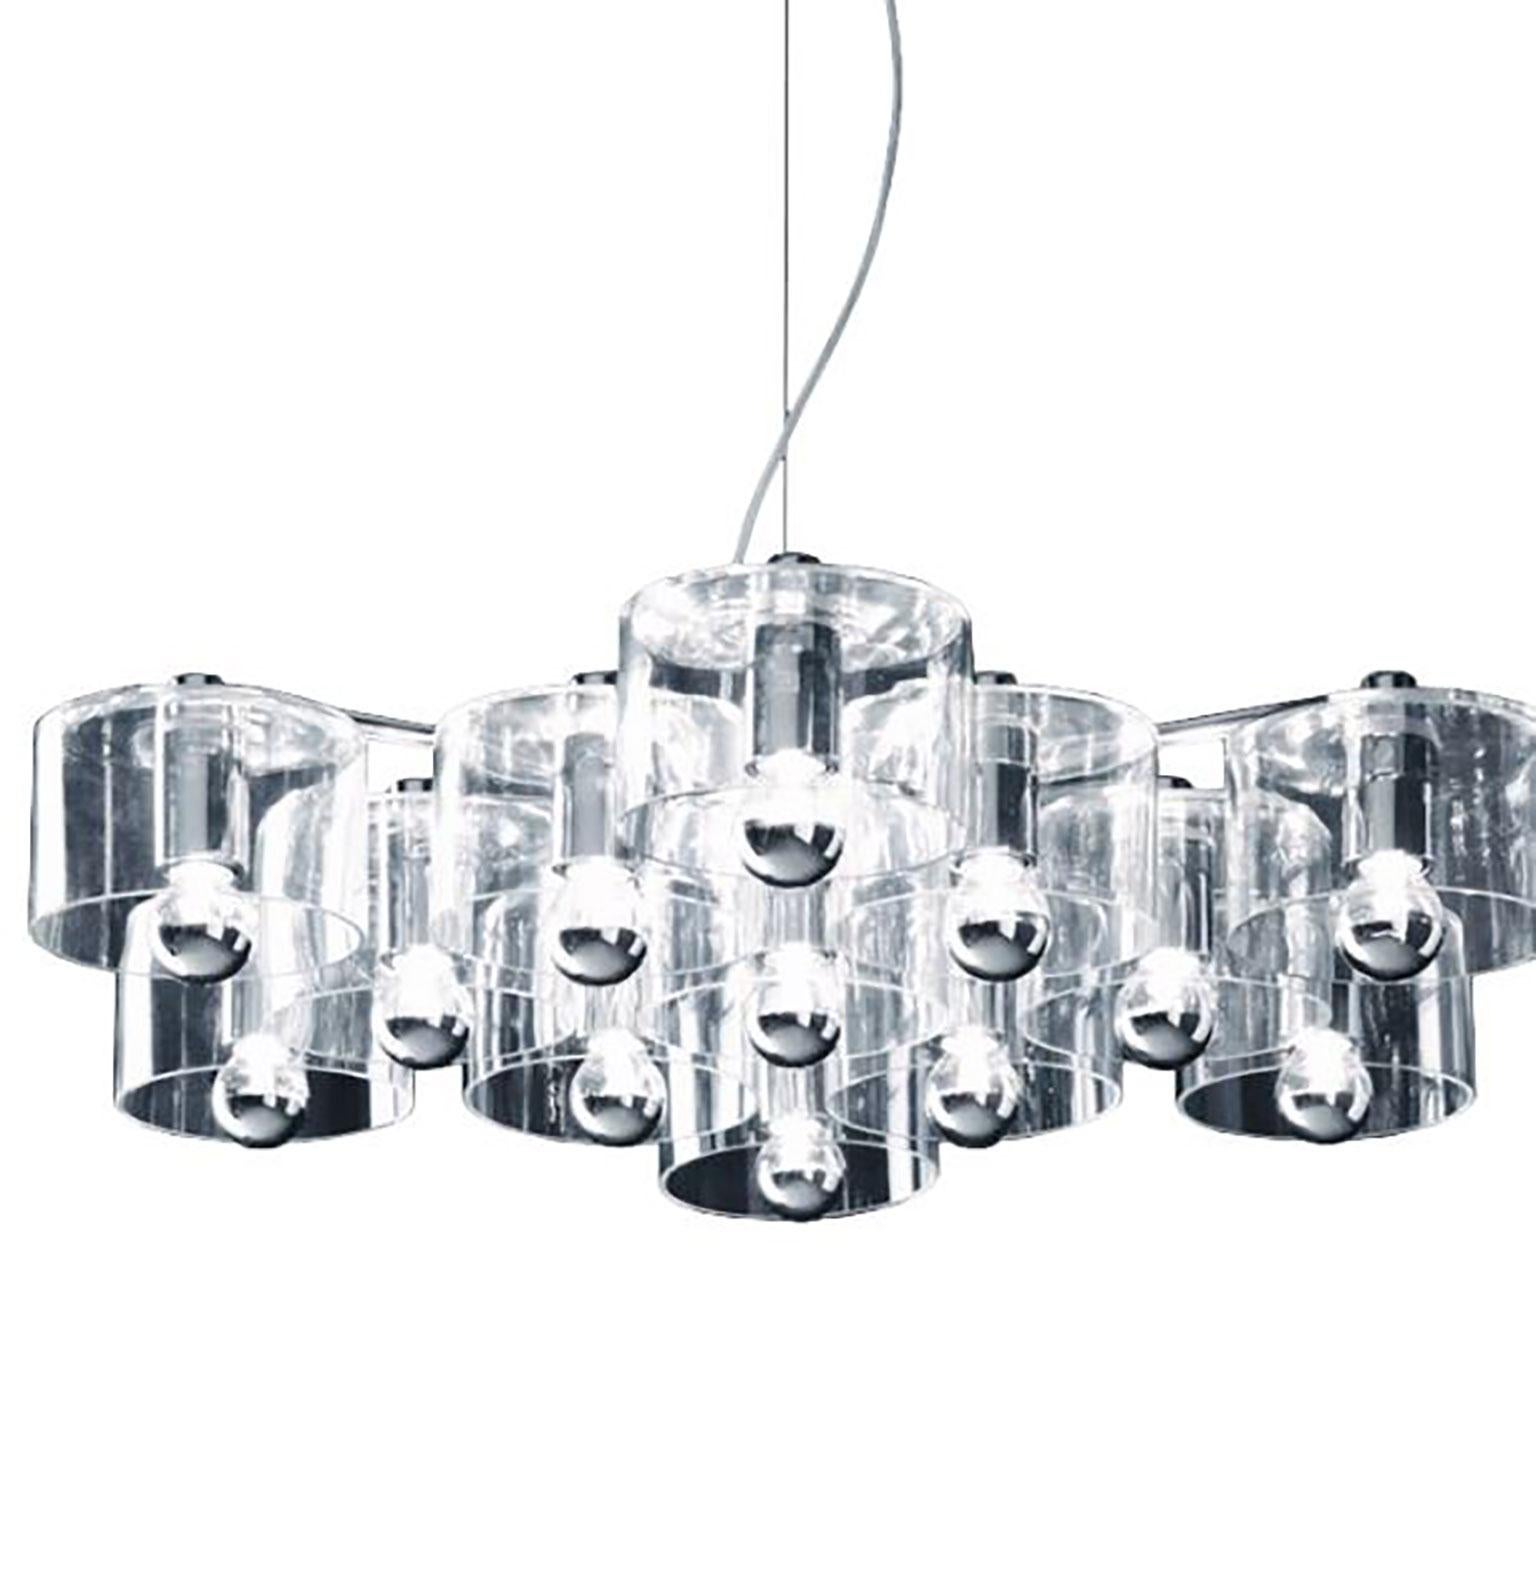 Suspension Fiore conçue par Marta Laudani & Marco Romanelli pour Oluce. La lampe se compose de cylindres en verre transparent qui se raccordent à un corps métallique, créant une forme qui ressemble à une fleur stylisée. Le métal et le verre soufflé